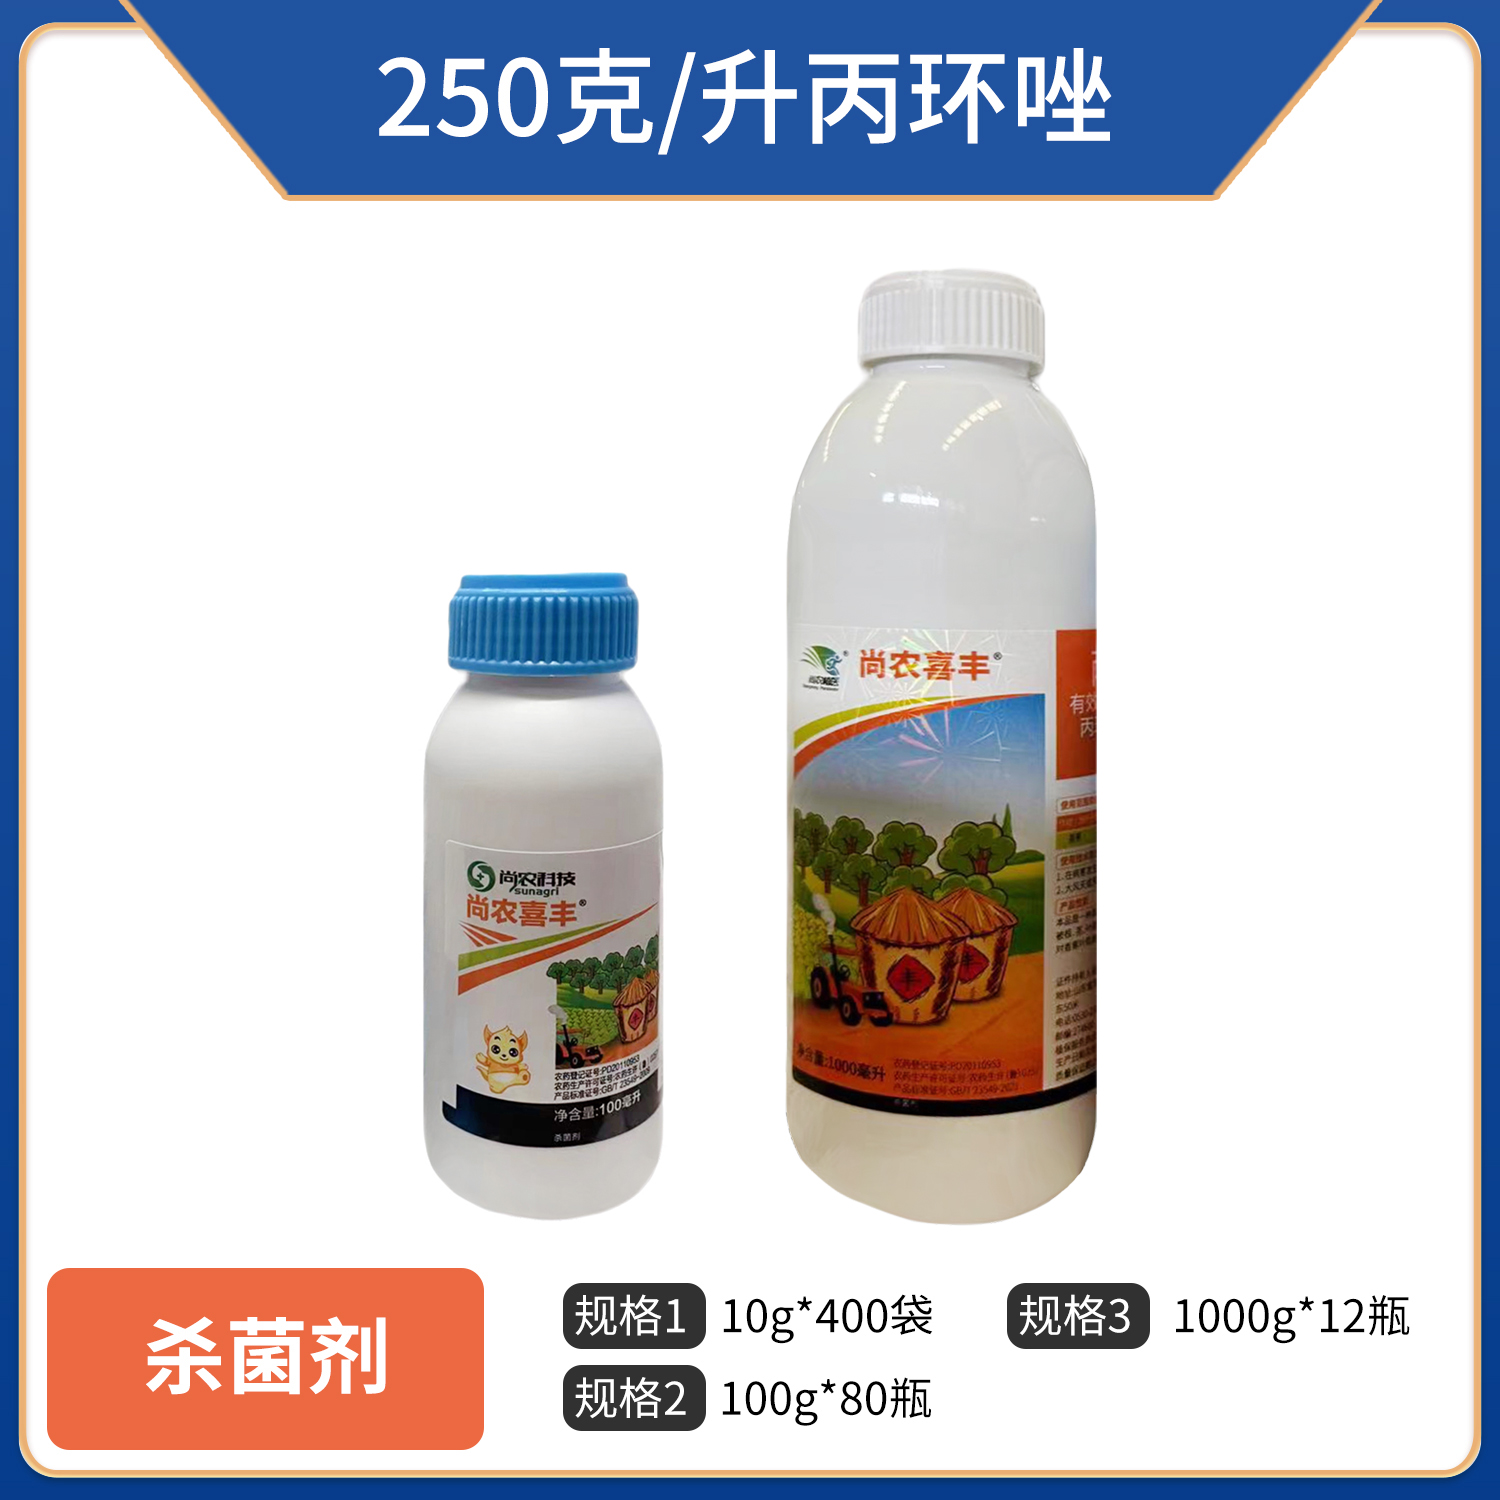 尚农喜丰-250克/升丙环唑乳油